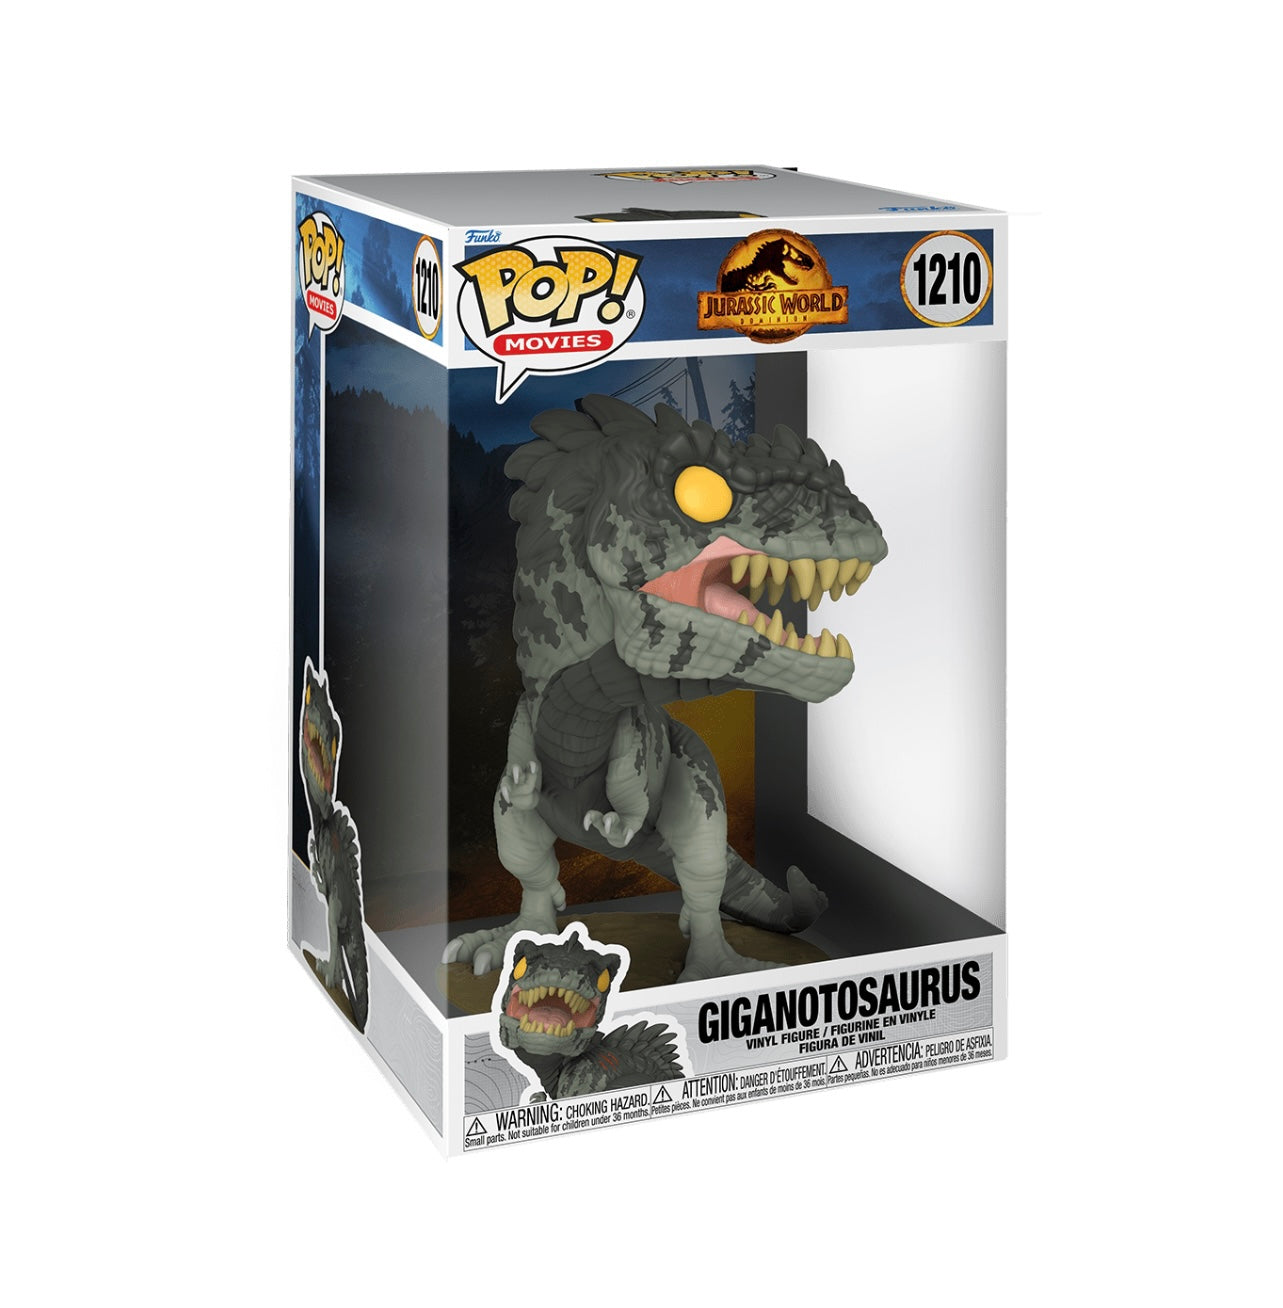 POP! Movies Jurassic World 10” Giganotosaurus #1210